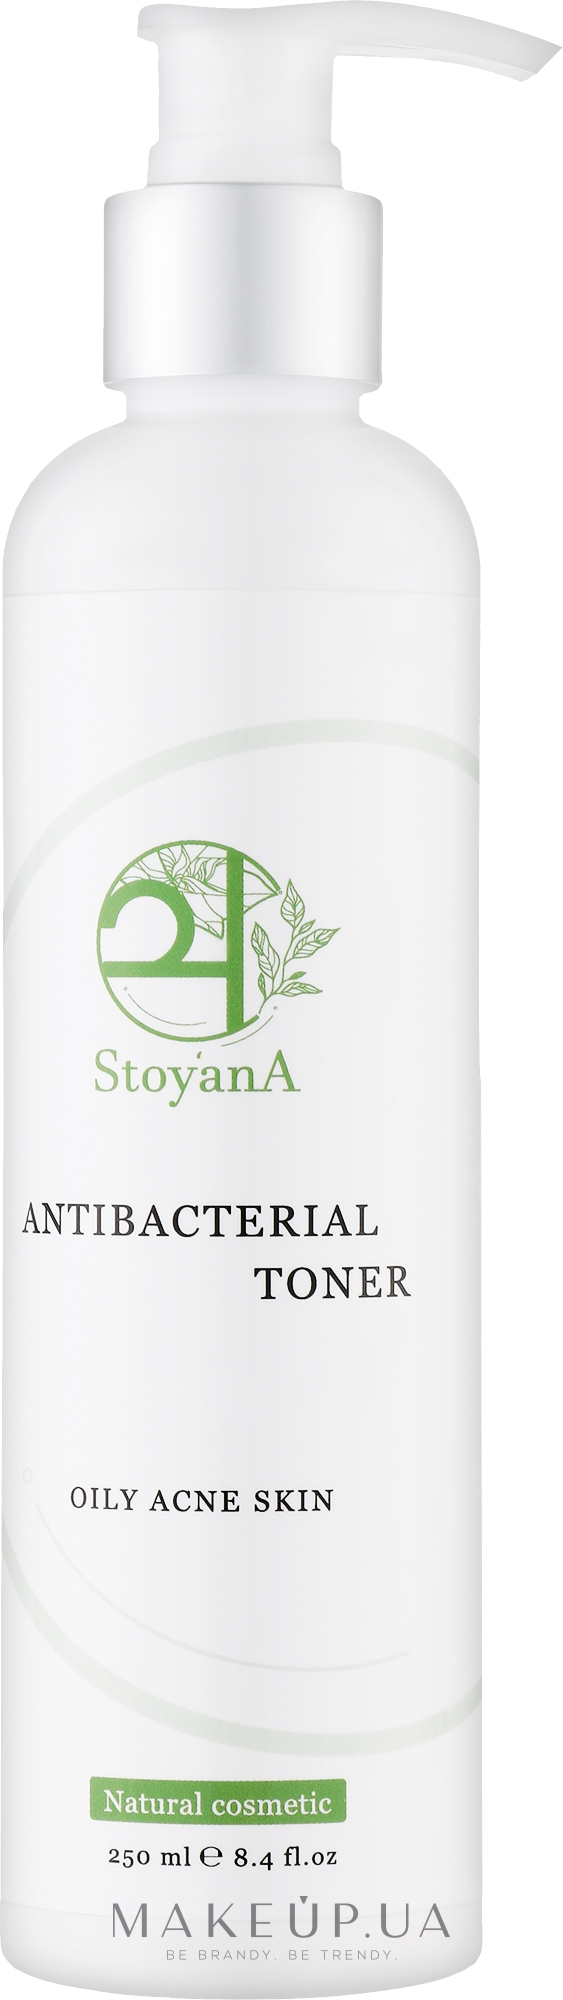 Антибактеріальний тонер для обличчя - StoyanA Antibacterial Toner Oily Acne Skin — фото 250ml